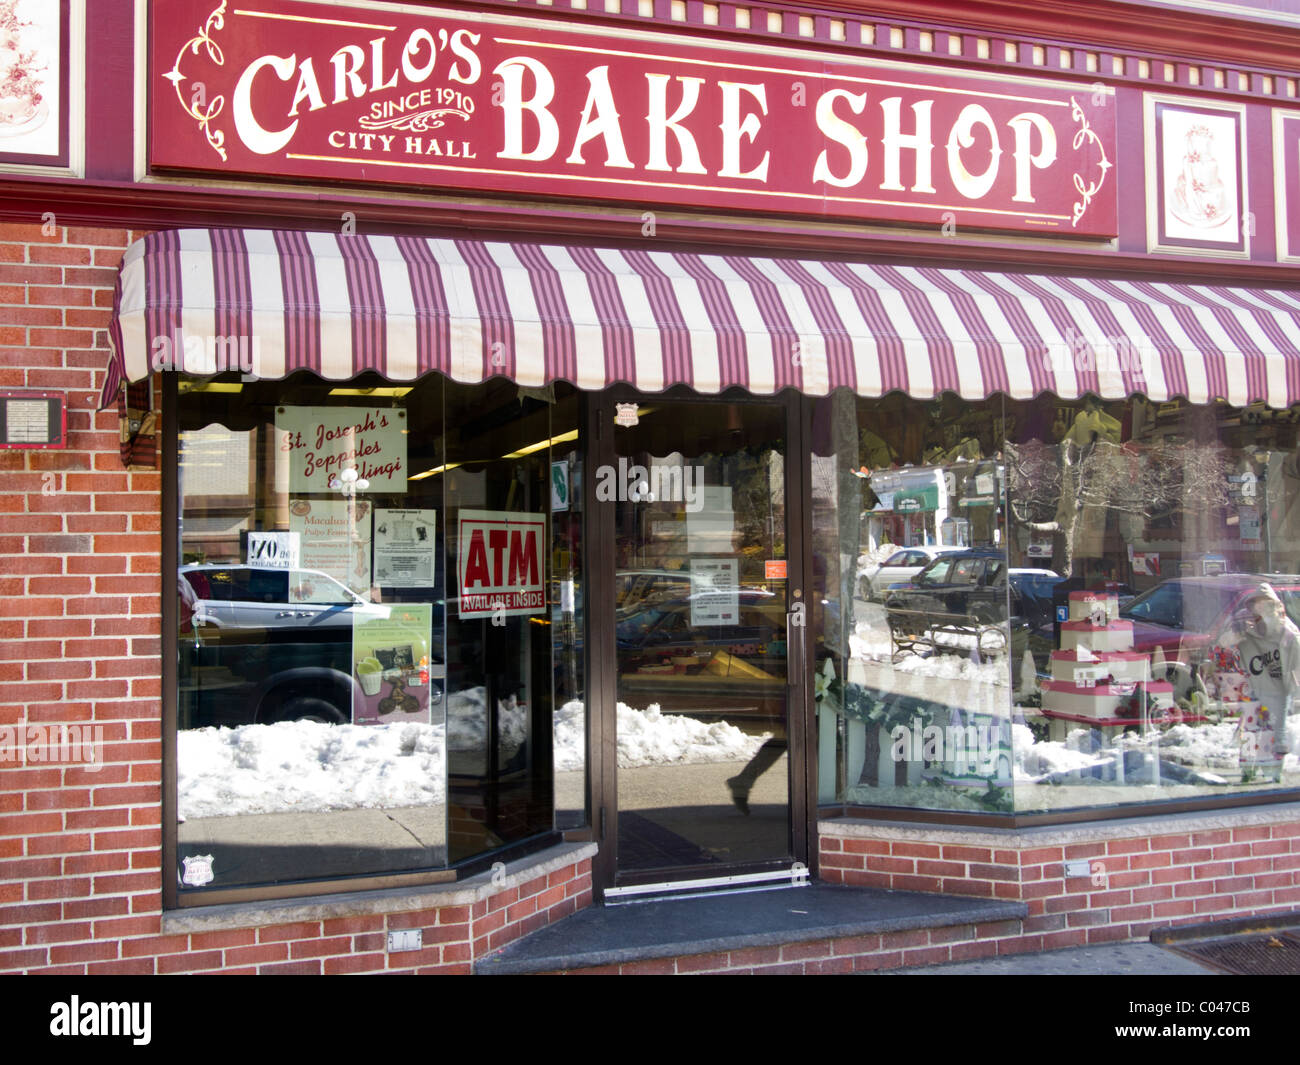 Waarneembaar Verval brandwonden Carlos bakery hoboken new jersey hi-res stock photography and images - Alamy